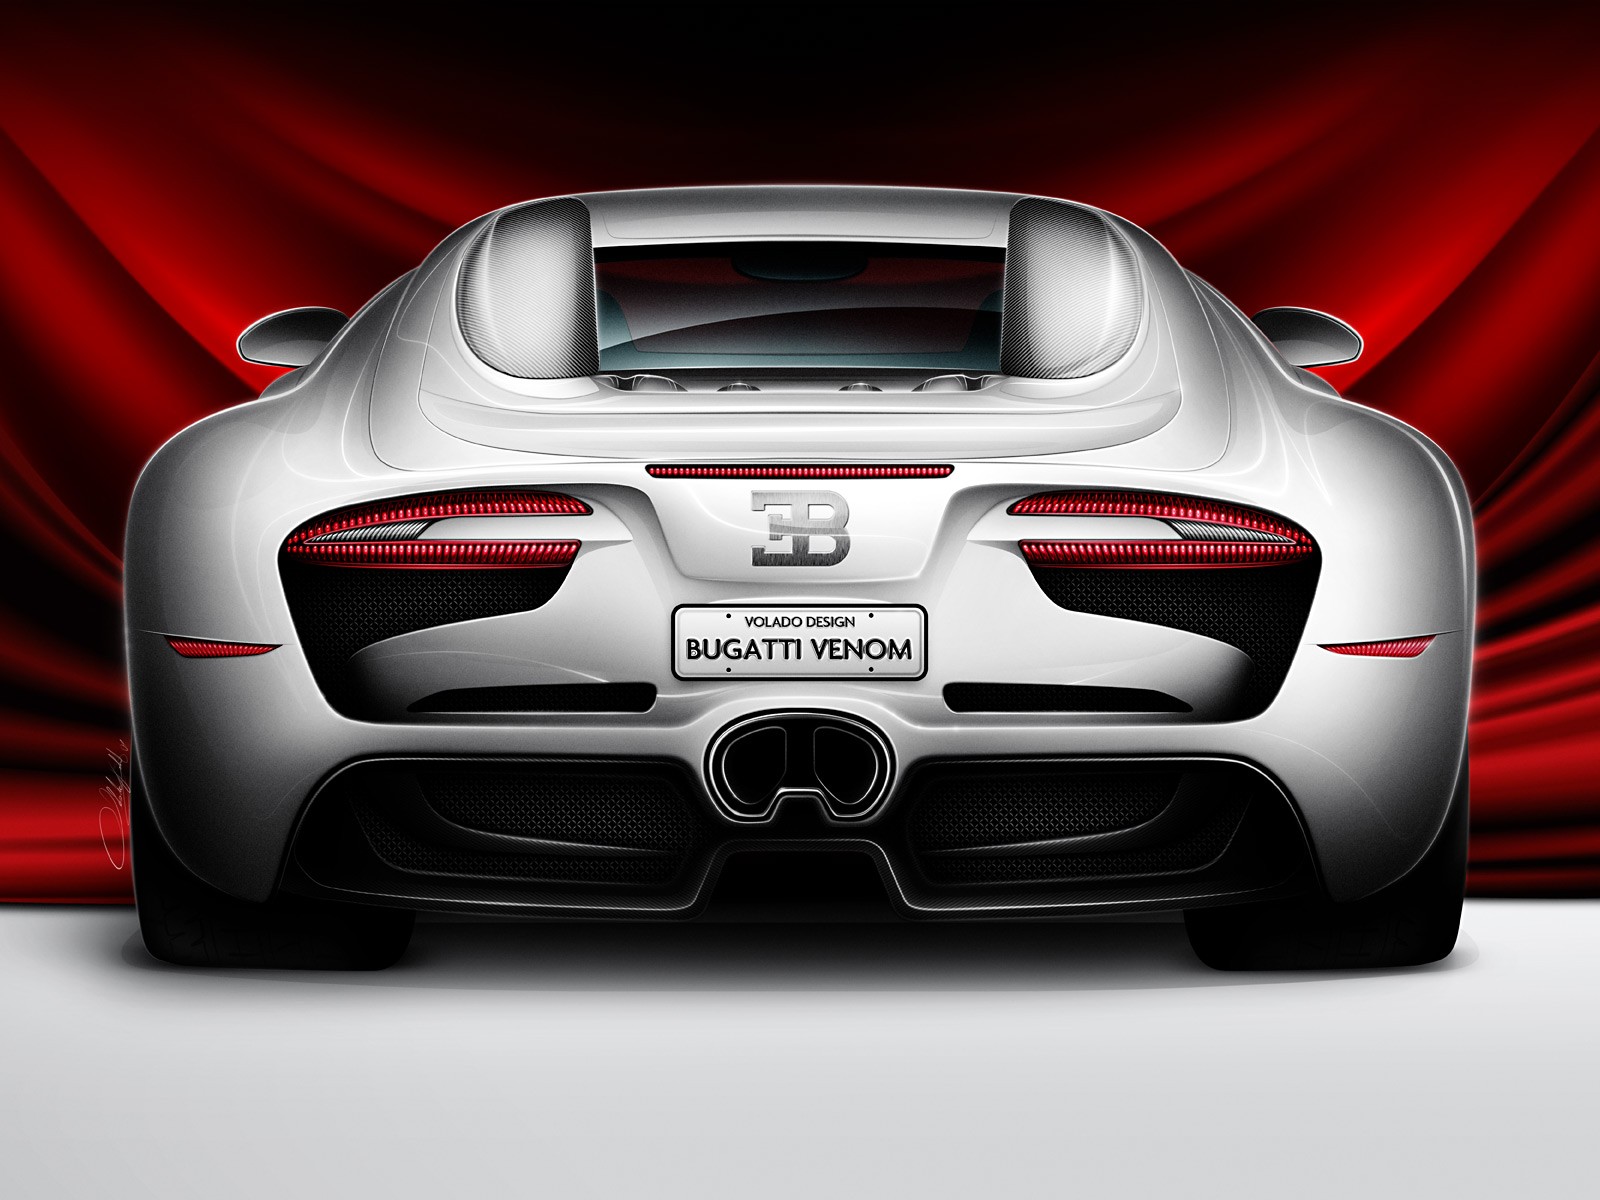 http://1.bp.blogspot.com/_7XKM5uAPfD8/TIIvA1TvFaI/AAAAAAAAAOI/kbDXjlT1TX0/s1600/Bugatti_Venom_Concept_Volado_Design_back_12685.jpg